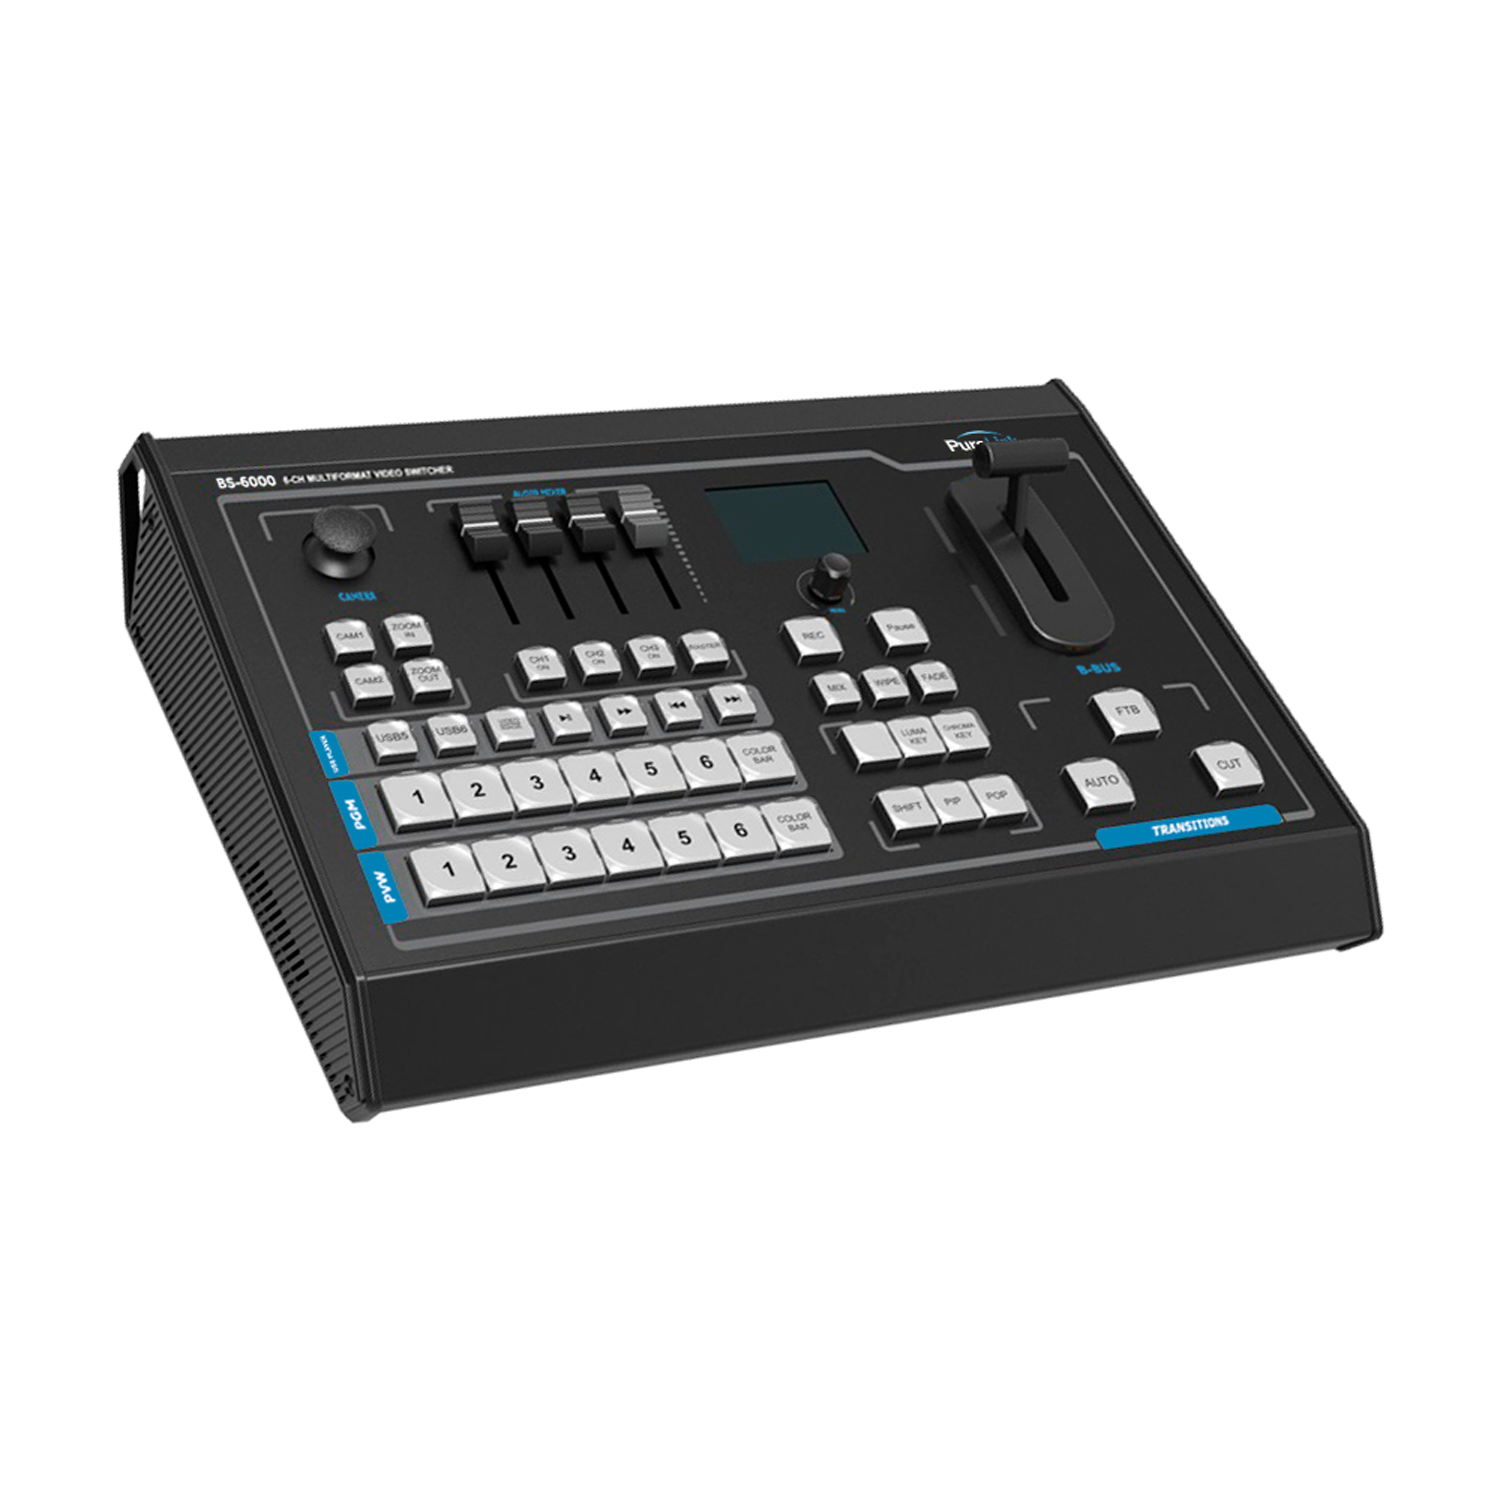 BS-6000 Broadcast Presentation Switcher User Manual V1.1